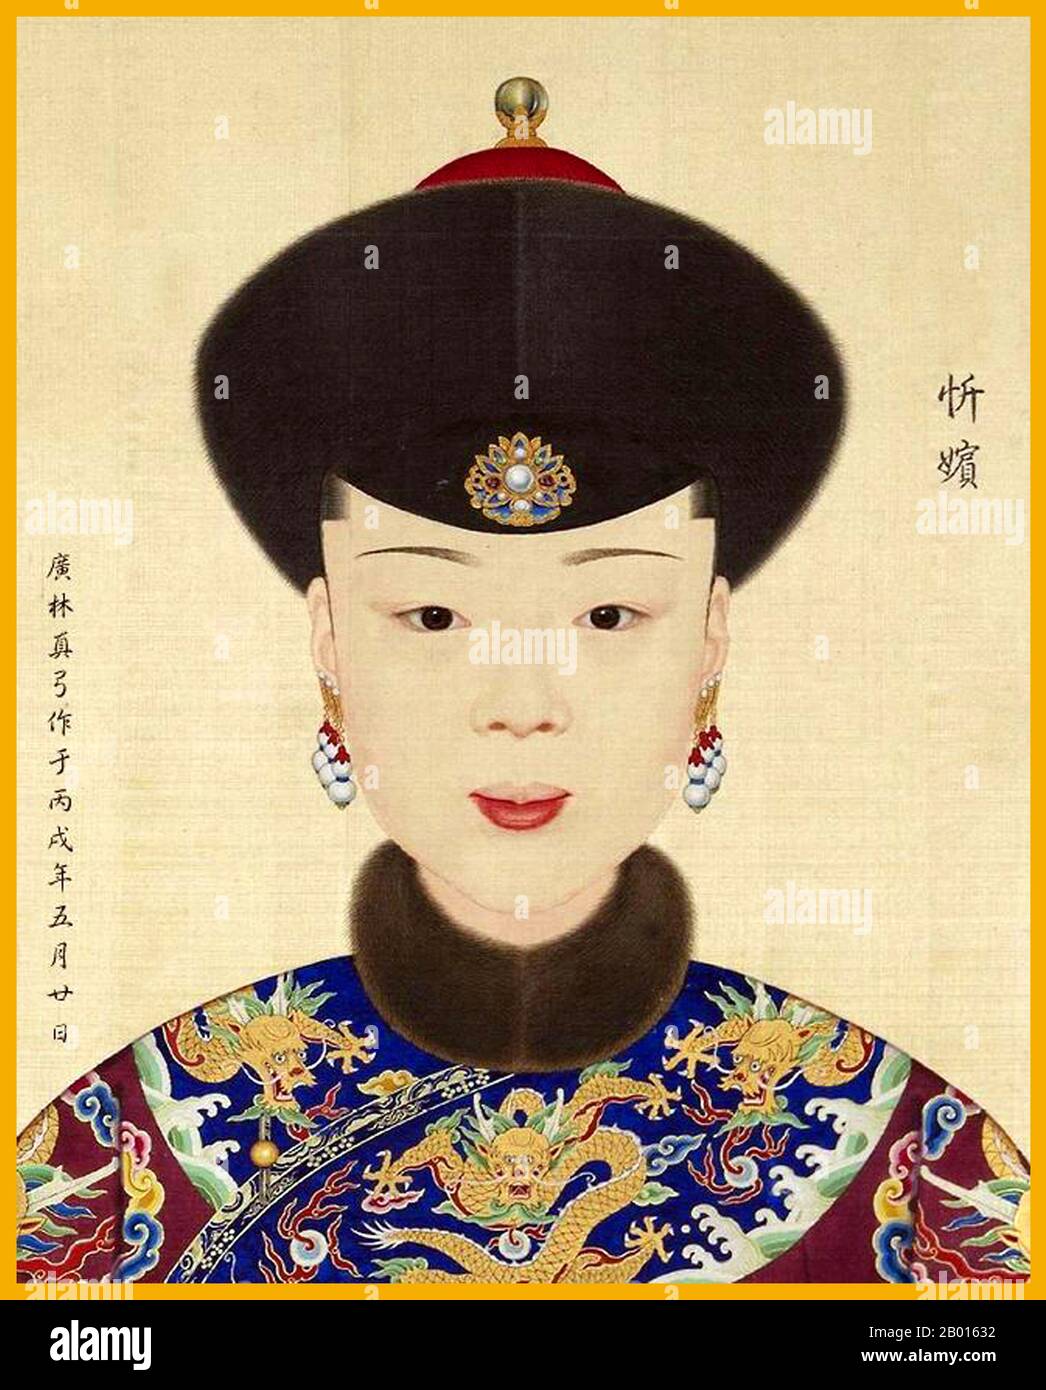 Cina: Nobile consorte Xin (26 giugno 1737 - 28 maggio 1764), concubina dell'imperatore Qianglong. Pittura a mano di Giuseppe Castiglione (1688-1766), c. 1736-1770. Il nobile consorte Xin era la figlia del governatore generale Na Sutu e proveniva dal clan Manchu bordato giallo Banner Daigiya. Lady Daigiya entrò nella Città Proibita e divenne una padrona dell'Imperatore Qianlong, e fu concesso il titolo di 'concubina Xin' nel 1754. Nel 1763 fu elevata a "Consort Xin". Morì in parto l'anno dopo, e fu postumamente elevata a 'Noble Consort Xin'. Foto Stock